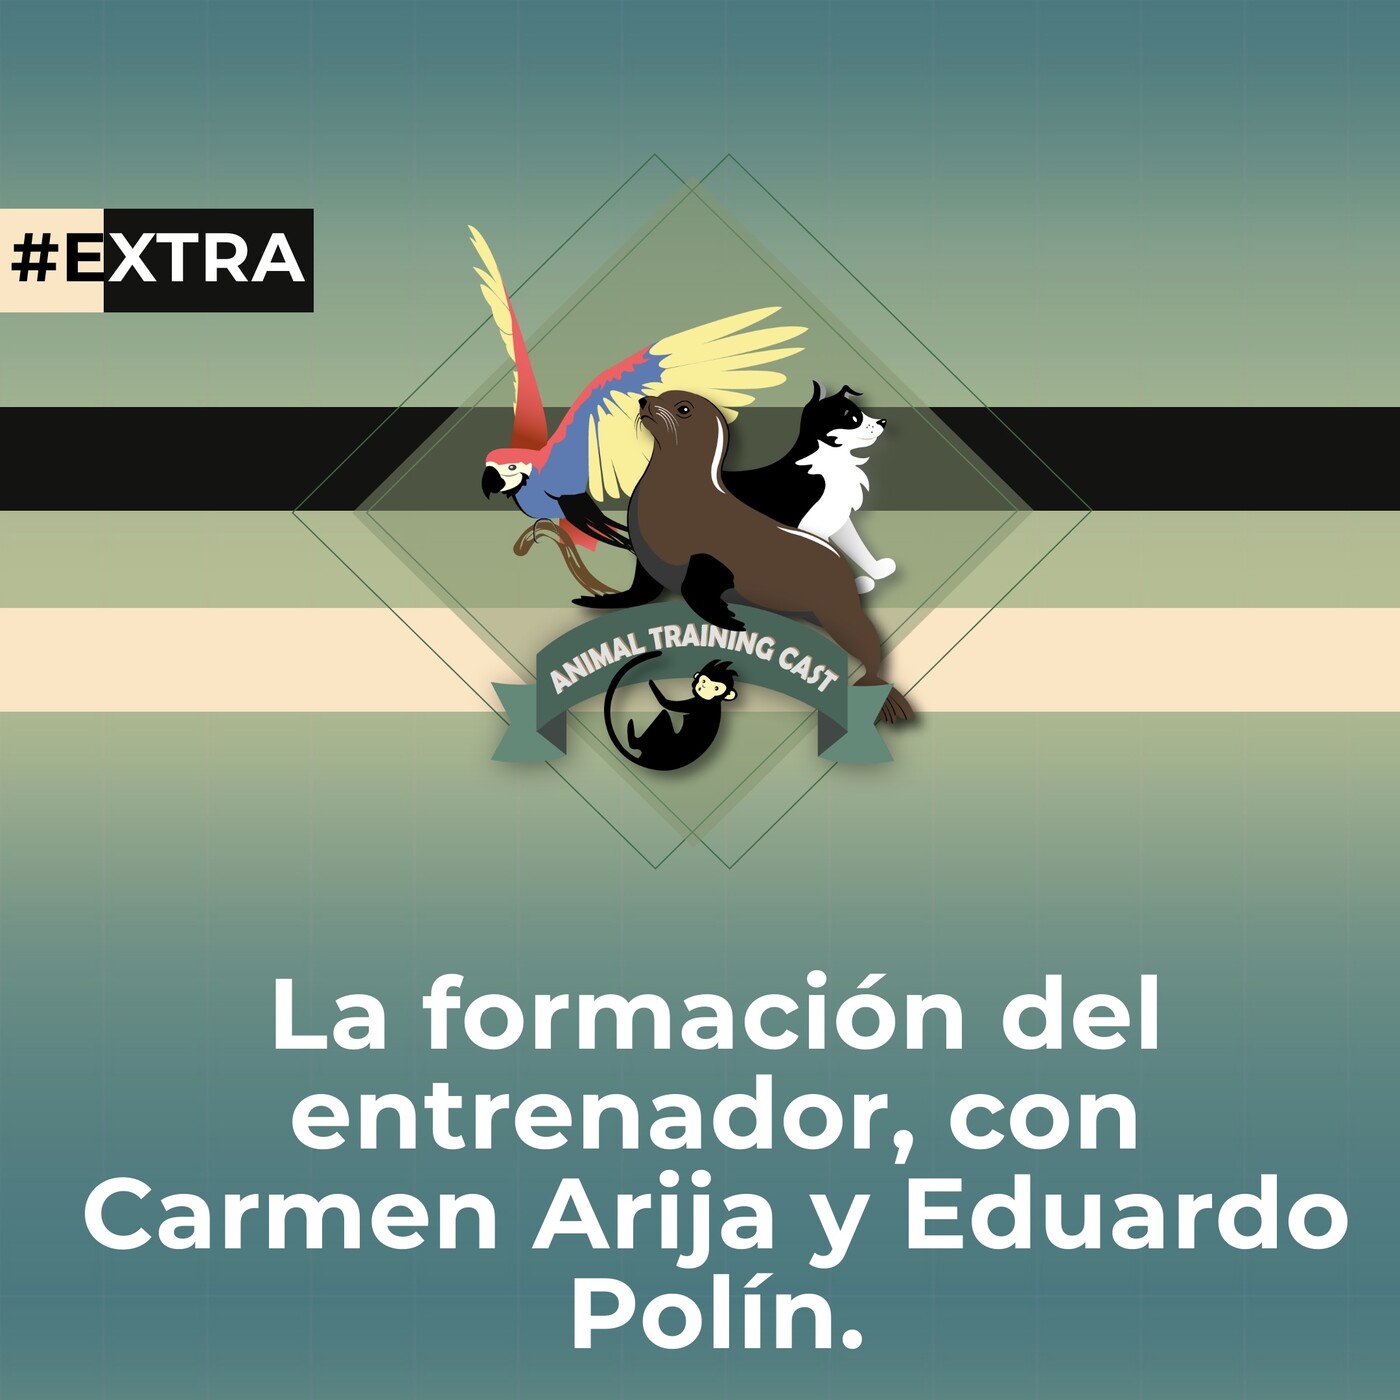 Bonus Track: La formación del entrenador, con Carmen Arija y Eduardo Polín.